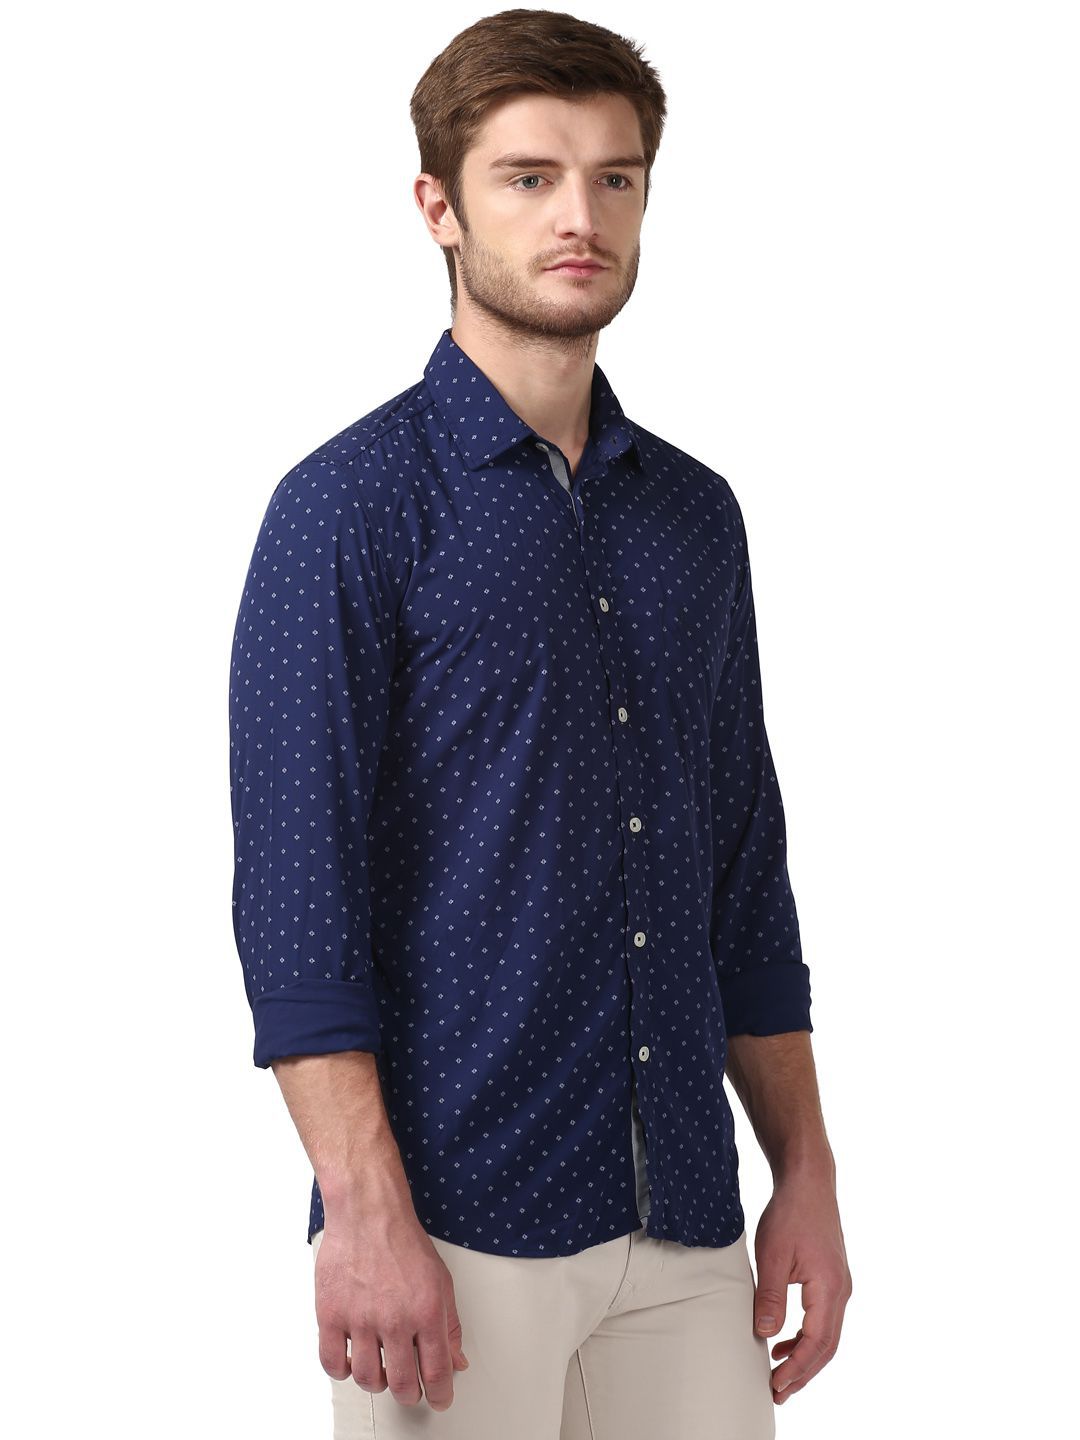 Parx Blue Slim Fit Shirt - Buy Parx Blue Slim Fit Shirt Online at Best ...